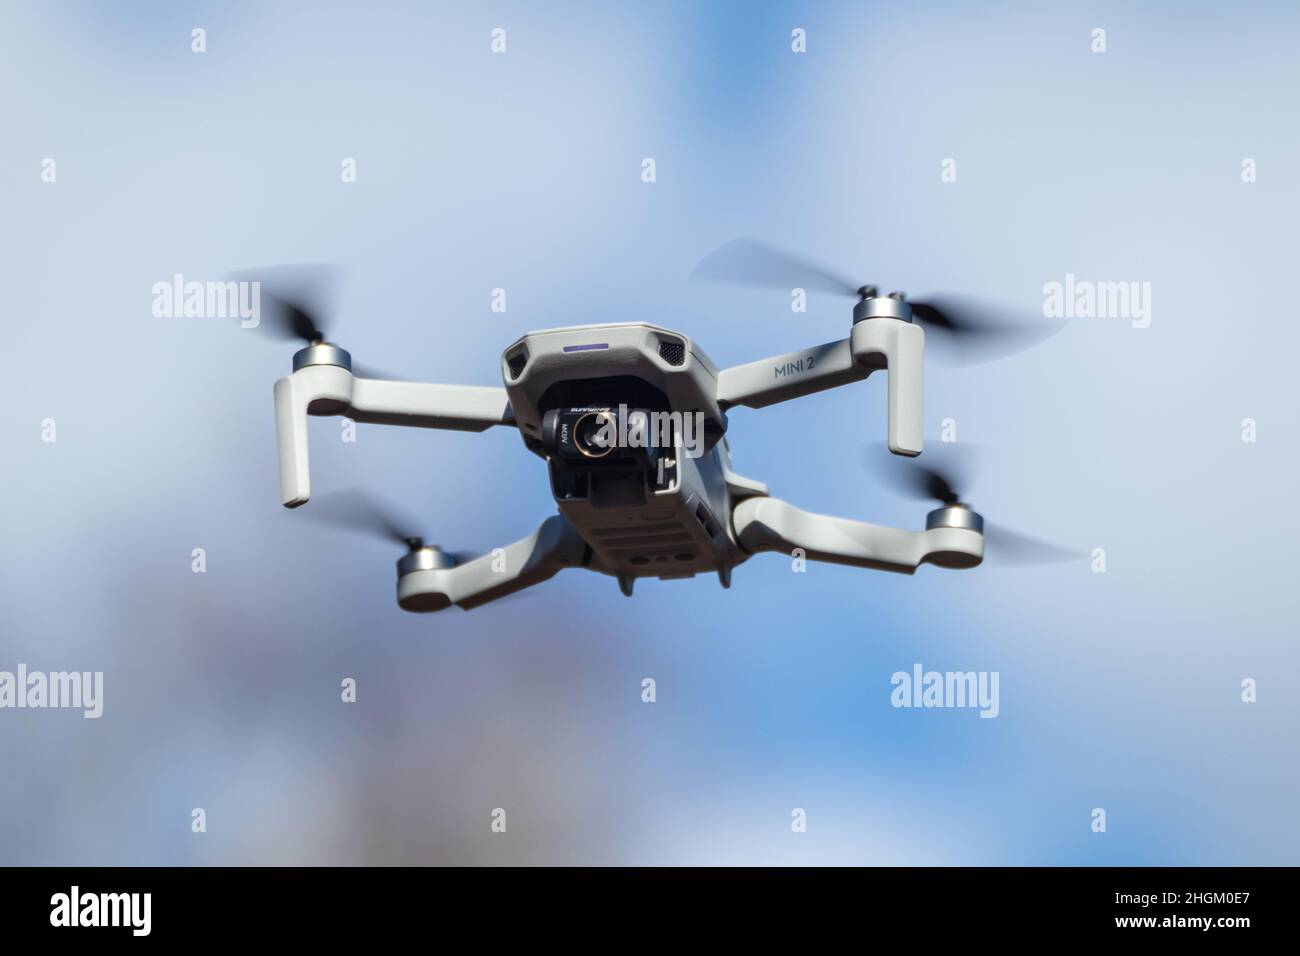 Kharkiv, Ukraine - 6 mars 2021: DJI Mavic Mini 2 drone avec filtre d'objectif d'appareil photo, vol dans le jour bleu ensoleillé.Nouveau périphérique quadcopter survolant blurr Banque D'Images